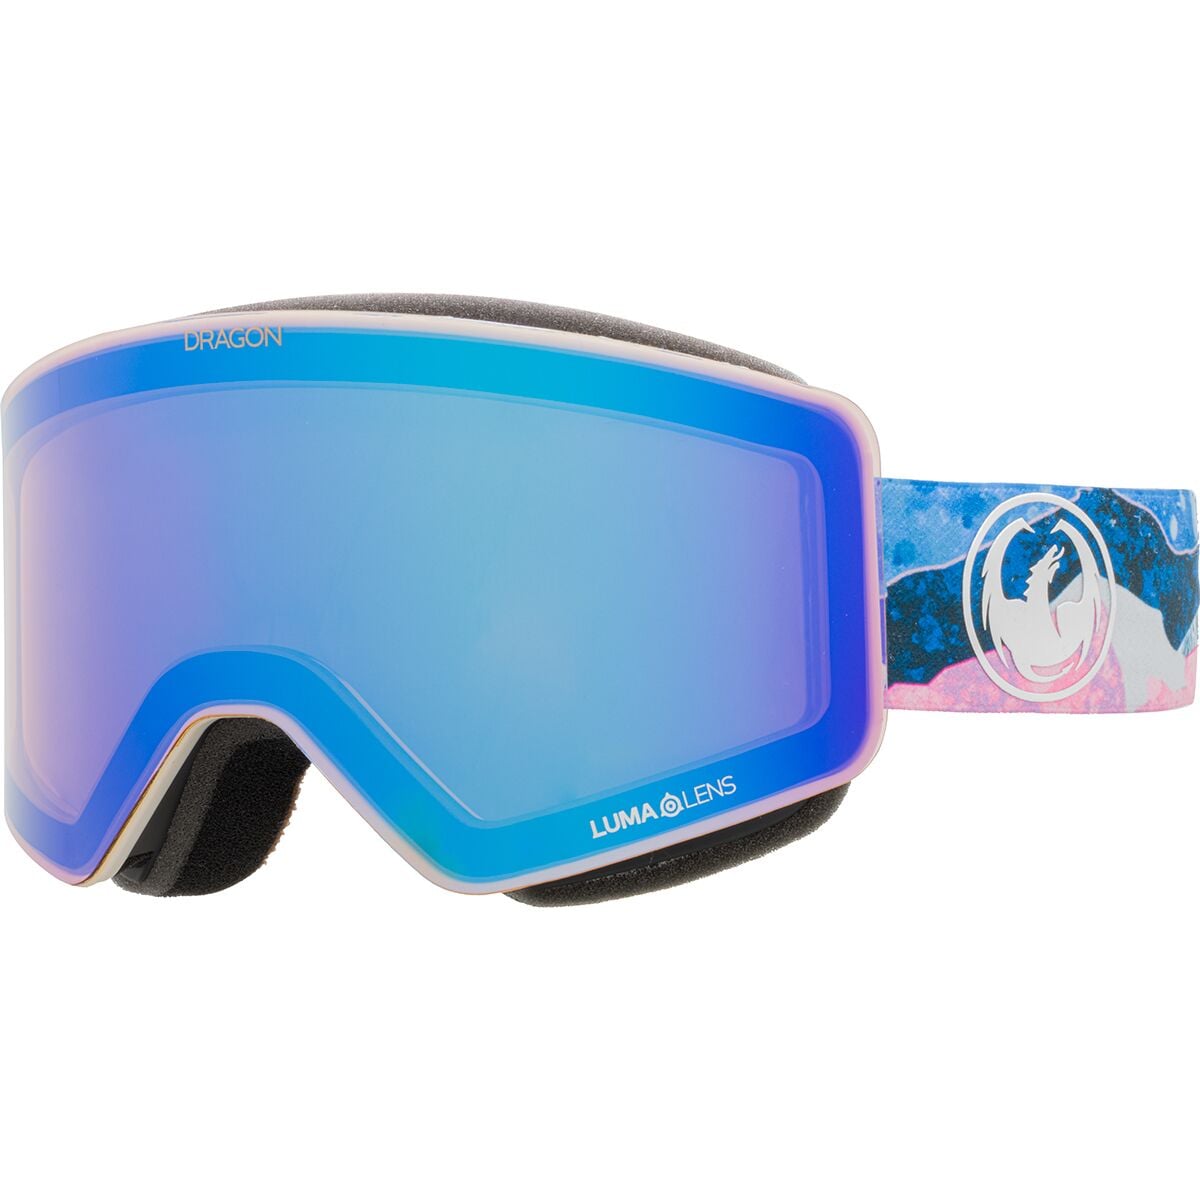 R1 Goggles - Ski